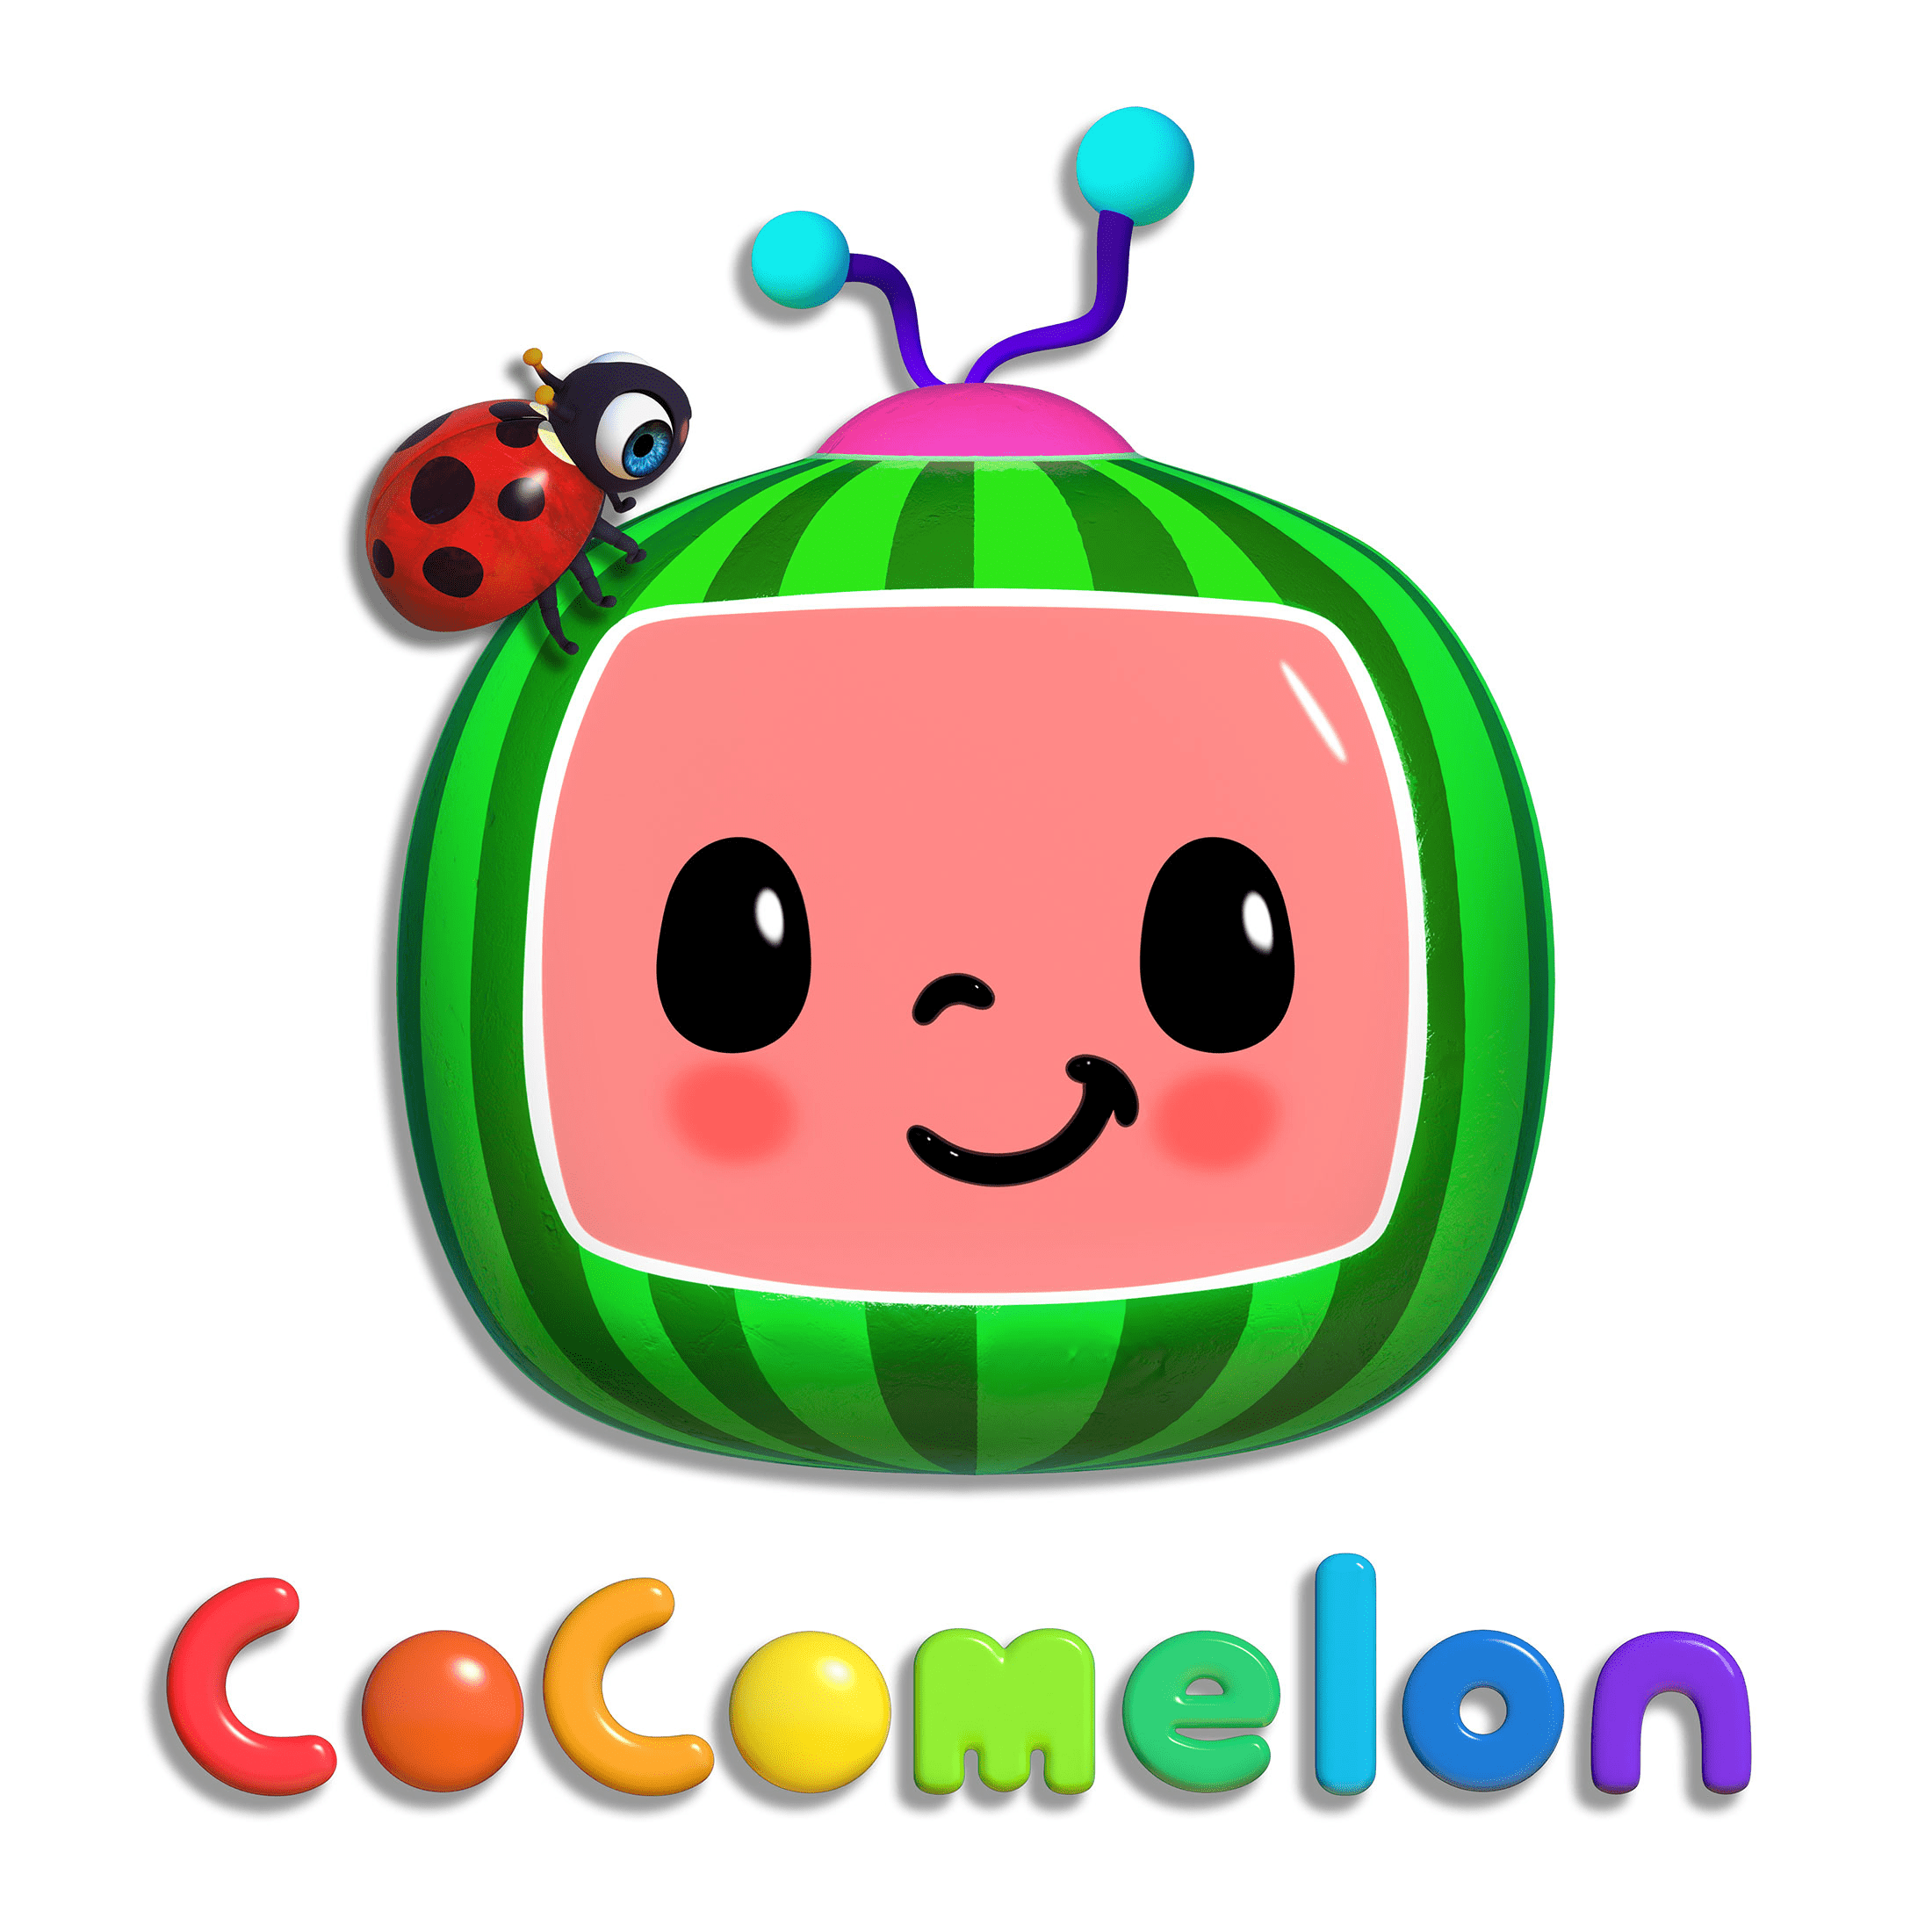 Cocomelon Logo Wallpaper Free Cocomelon Logo Background